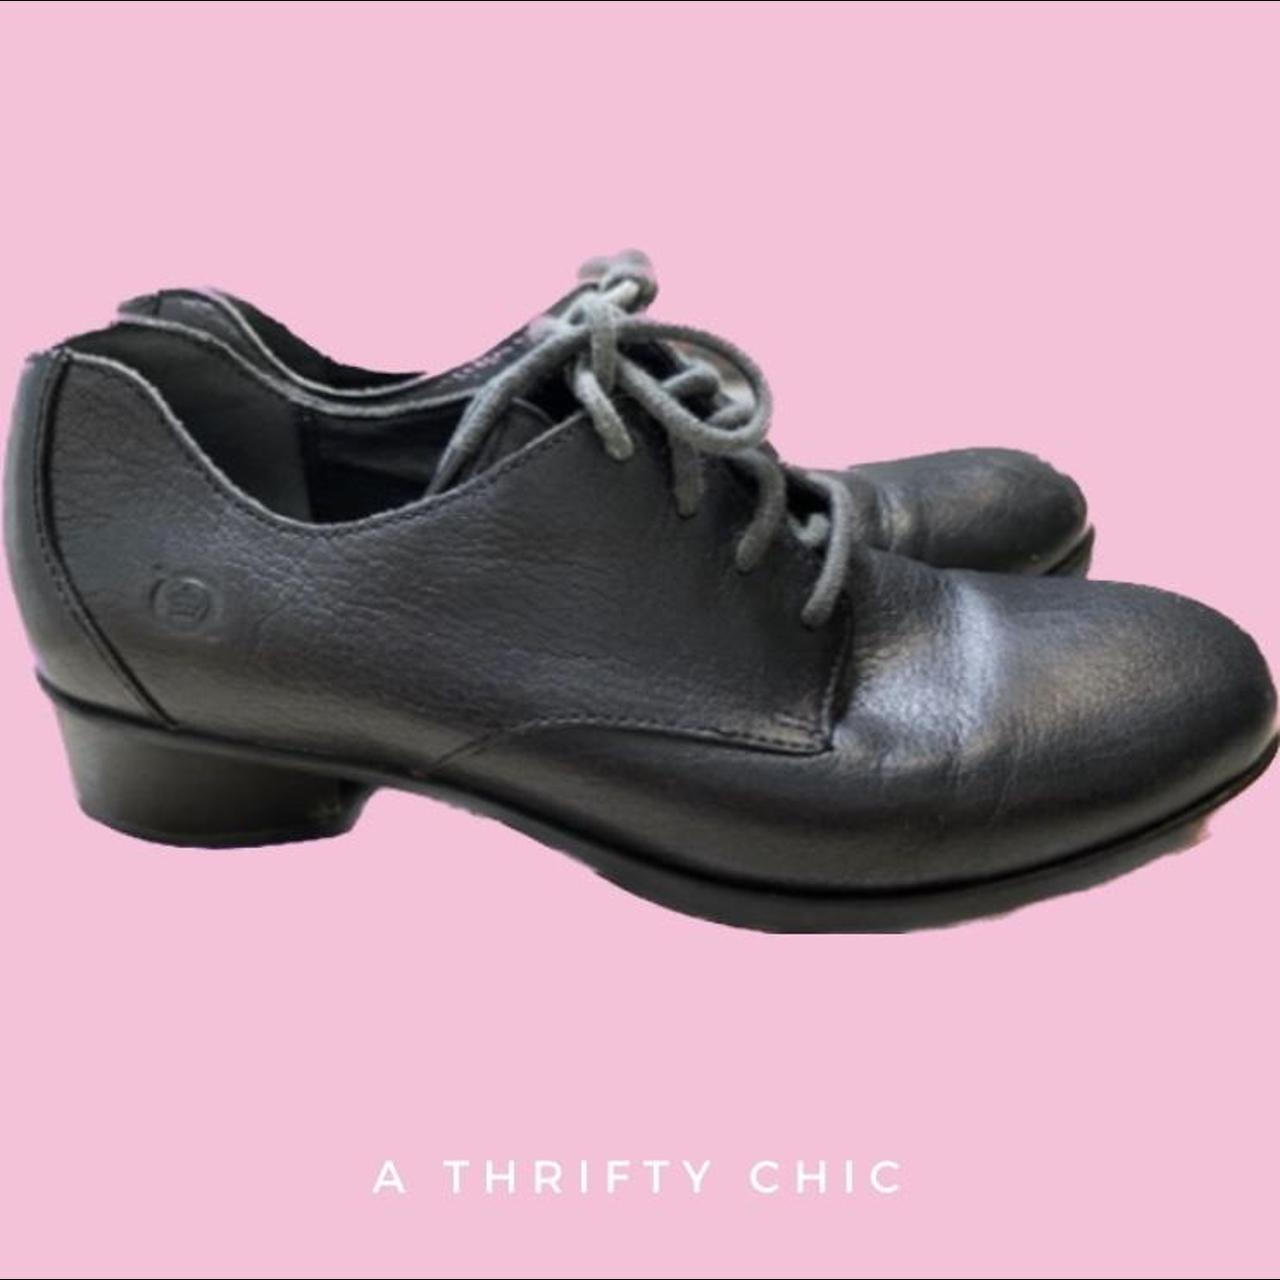 Born Leather Black Lace Up Shoes Size 9 #boc... - Depop